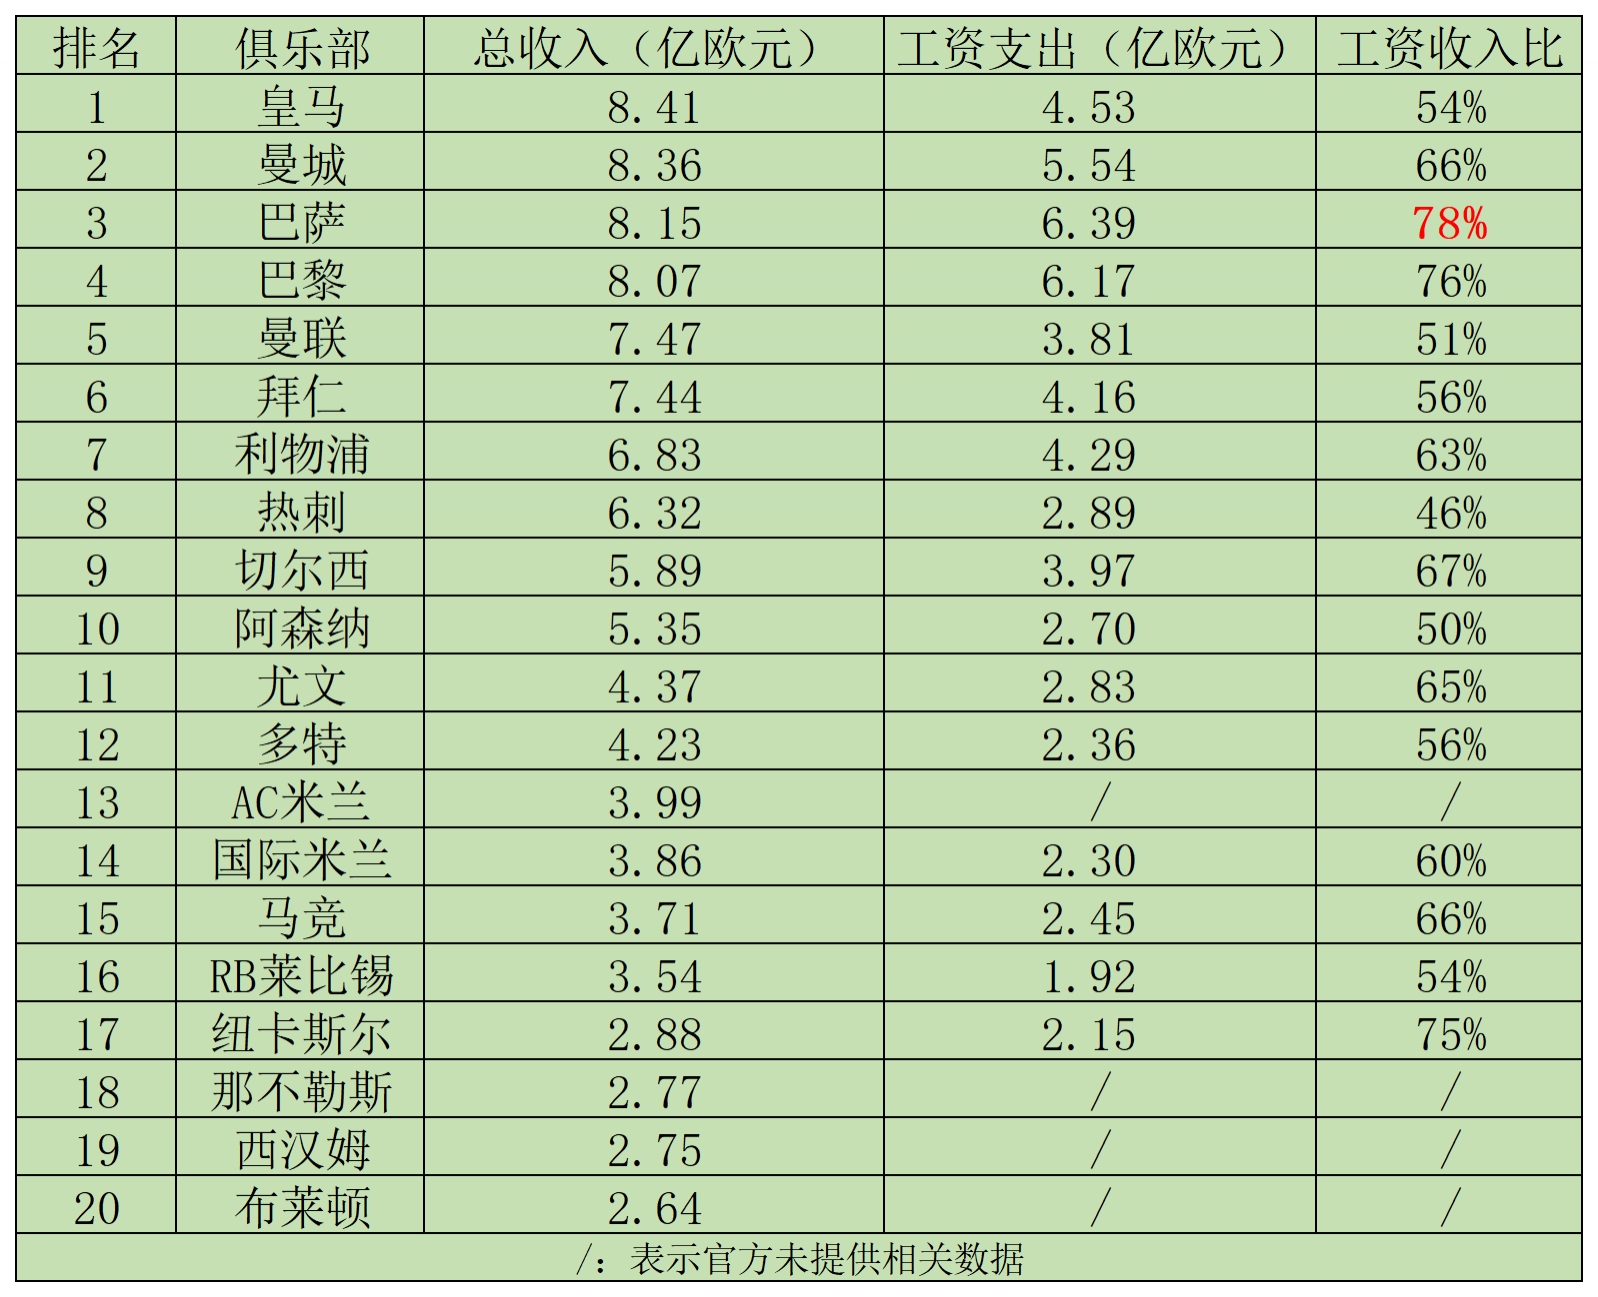 TOP20收入：皇马8.41亿领跑，工资收入比54%；巴萨工资收入比78%